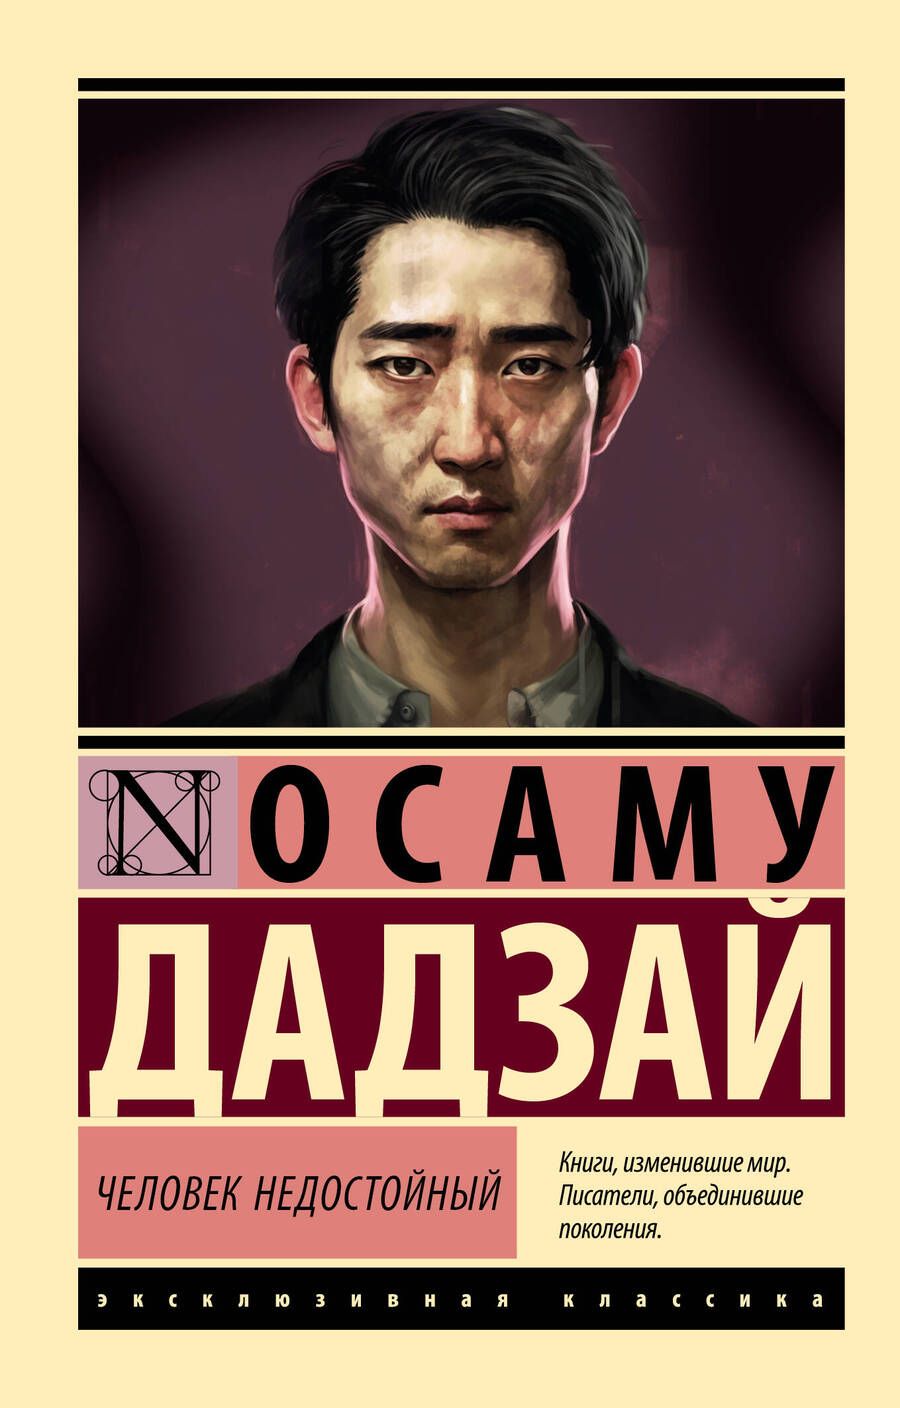 Обложка книги "Дадзай: Человек недостойный"